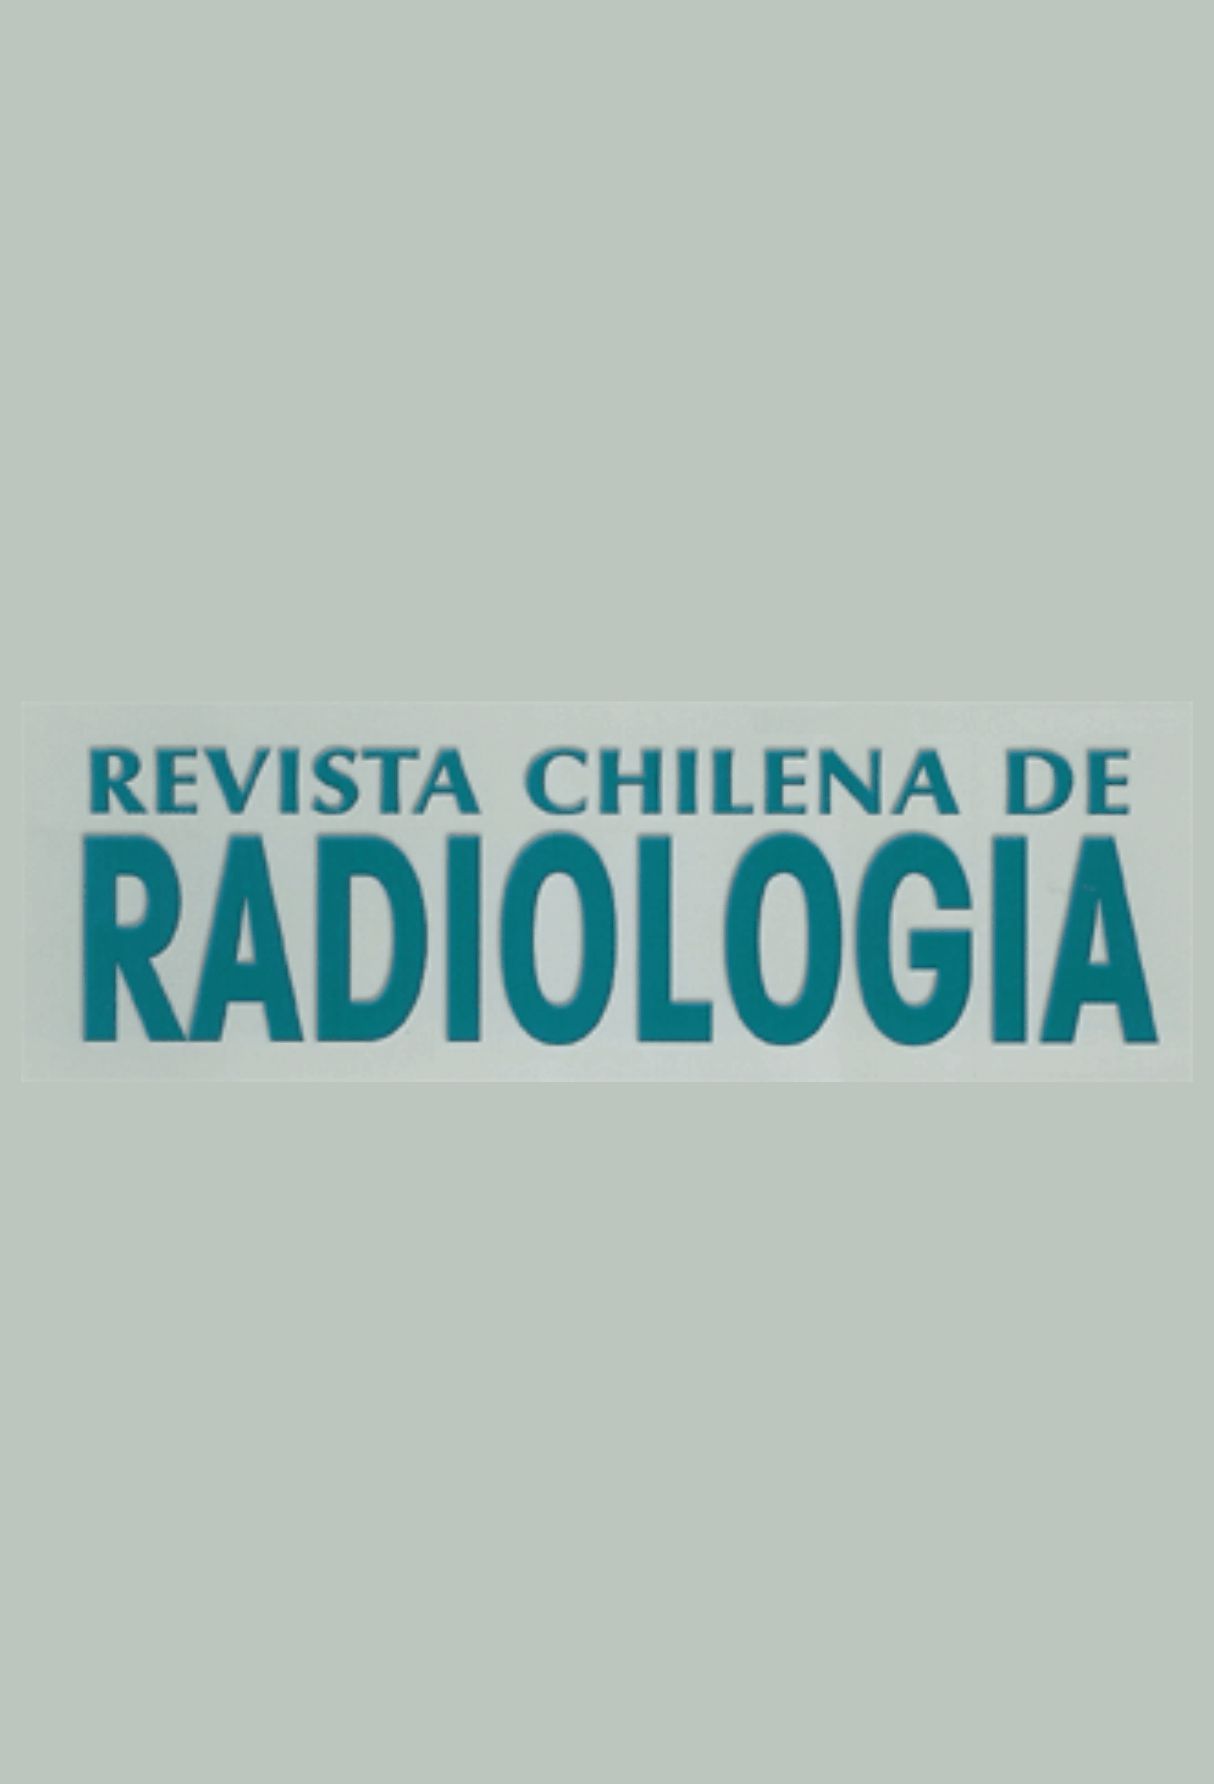 Capa: Revista Chilena de Radiologia